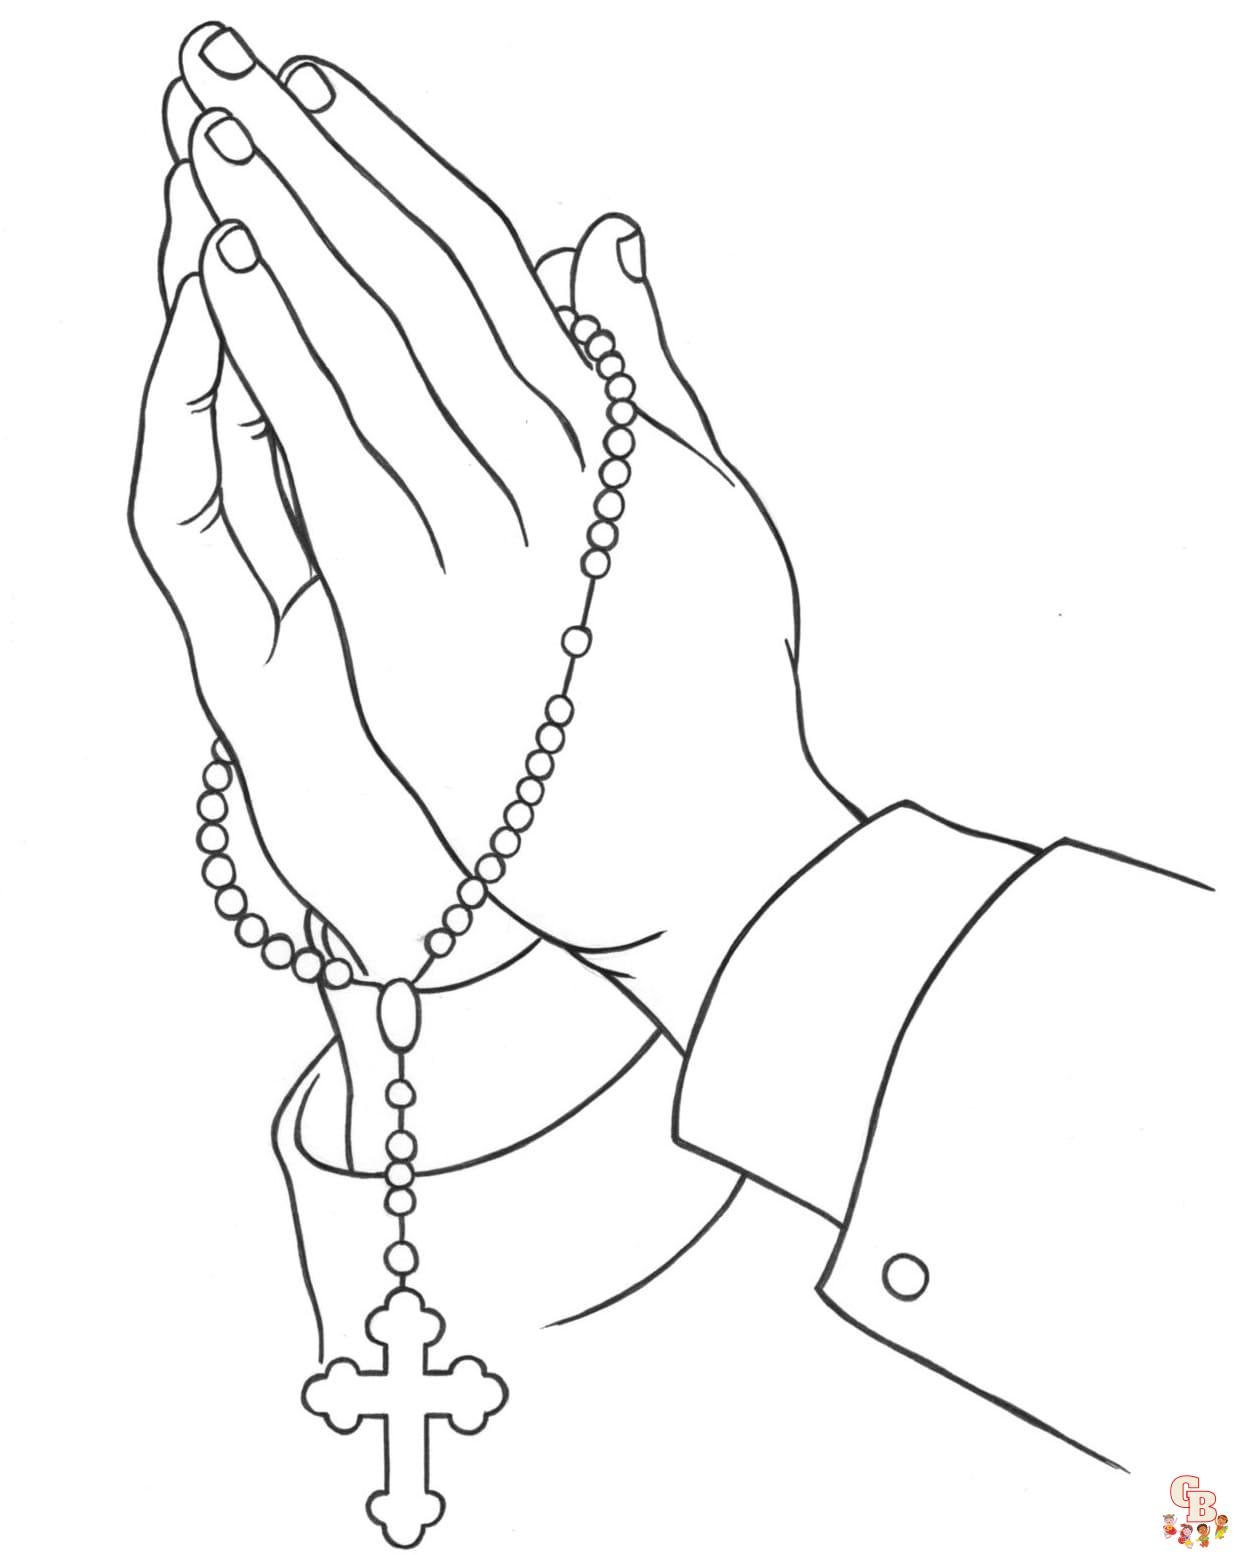 Printable Rosary coloring sheets